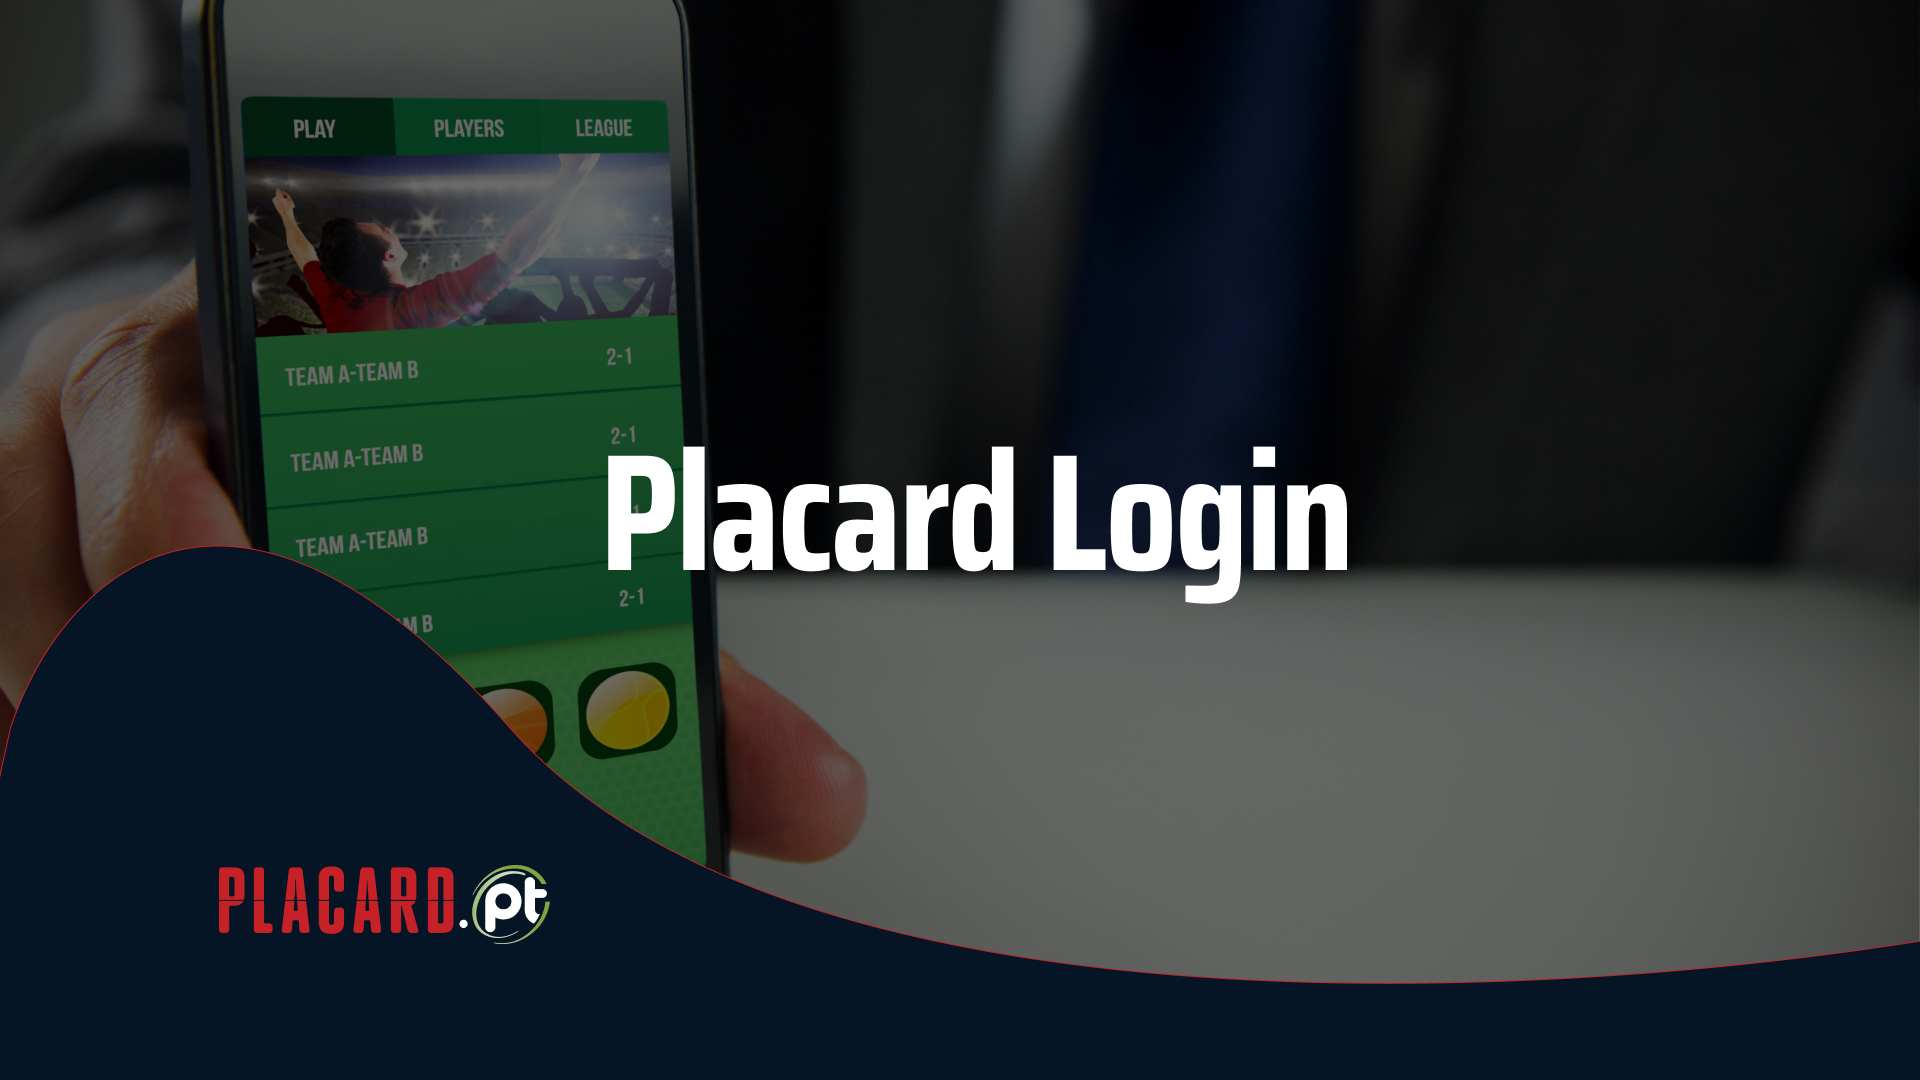 Placard login - Placard Login: Como se Registar na Casa de Apostas Placard.pt